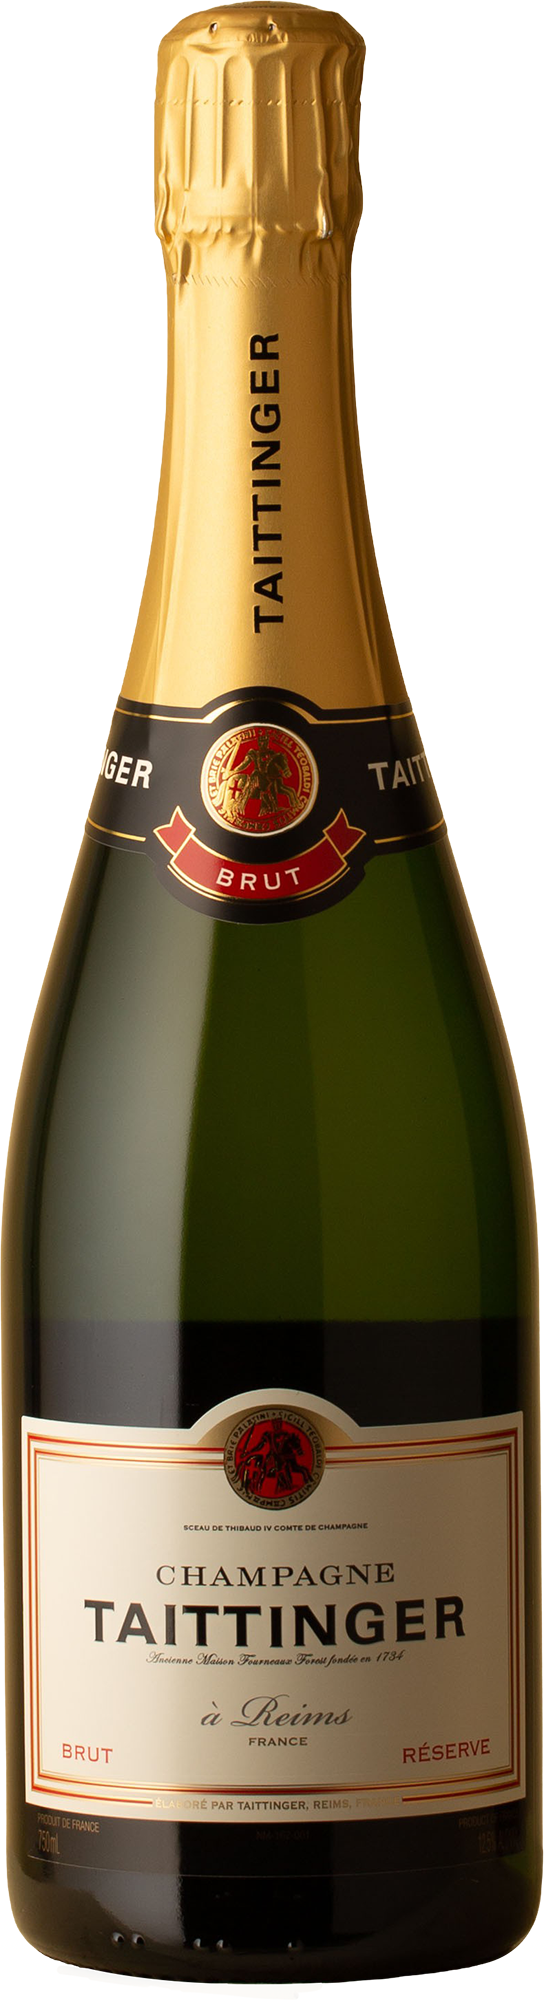 Taittinger - Brut Reserve NV Sparkling Wine